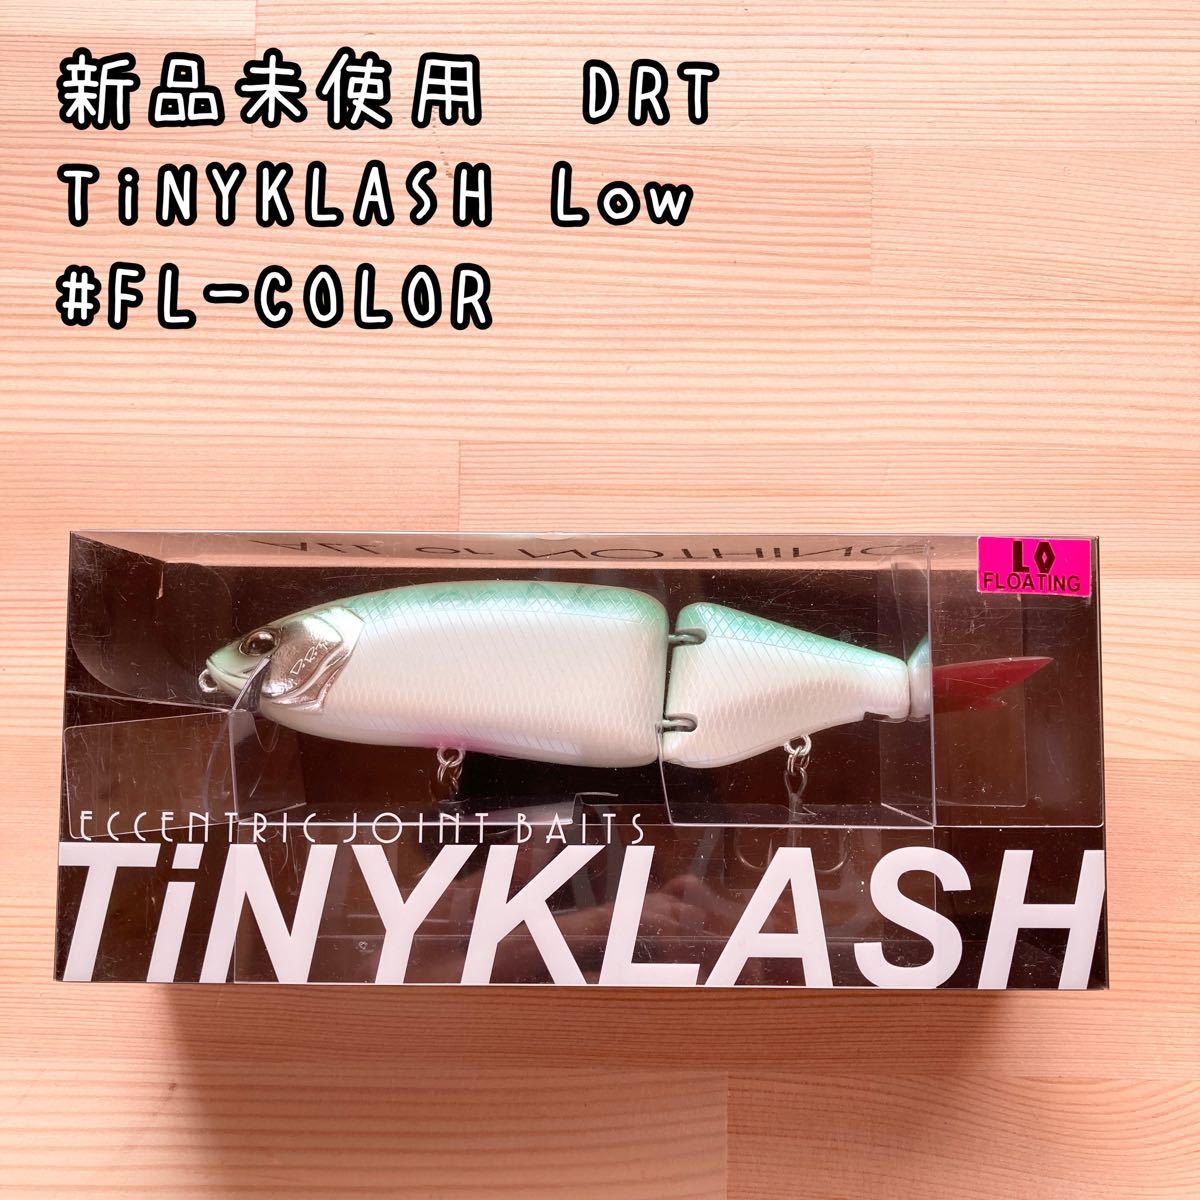 公式サイト無料 drt klash9 fish!オリカラ low ルアー用品